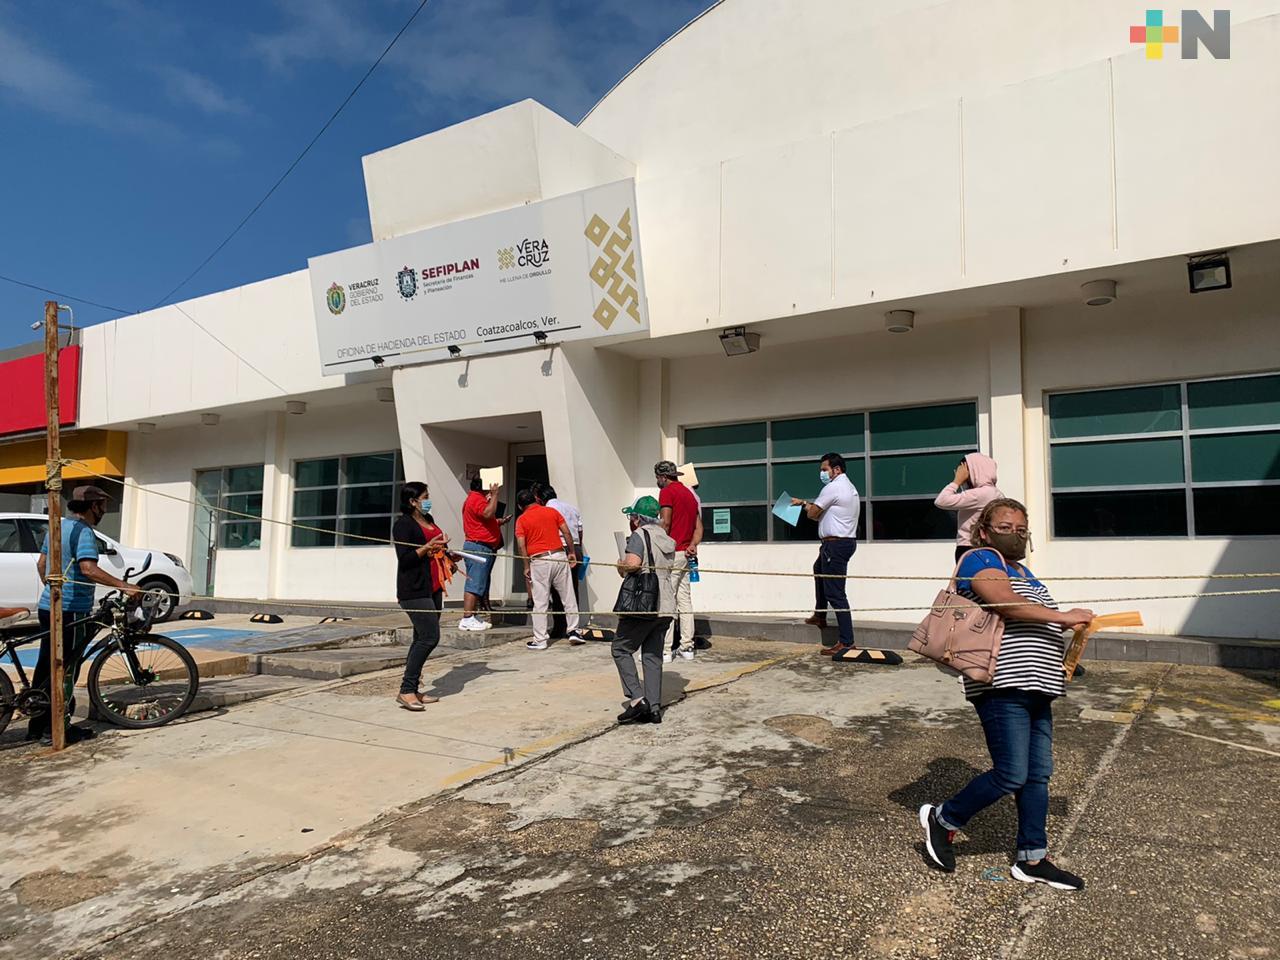 Llegan contribuyentes a cubrir tenencia vehicular en oficina de Hacienda del Estado en Coatzacoalcos